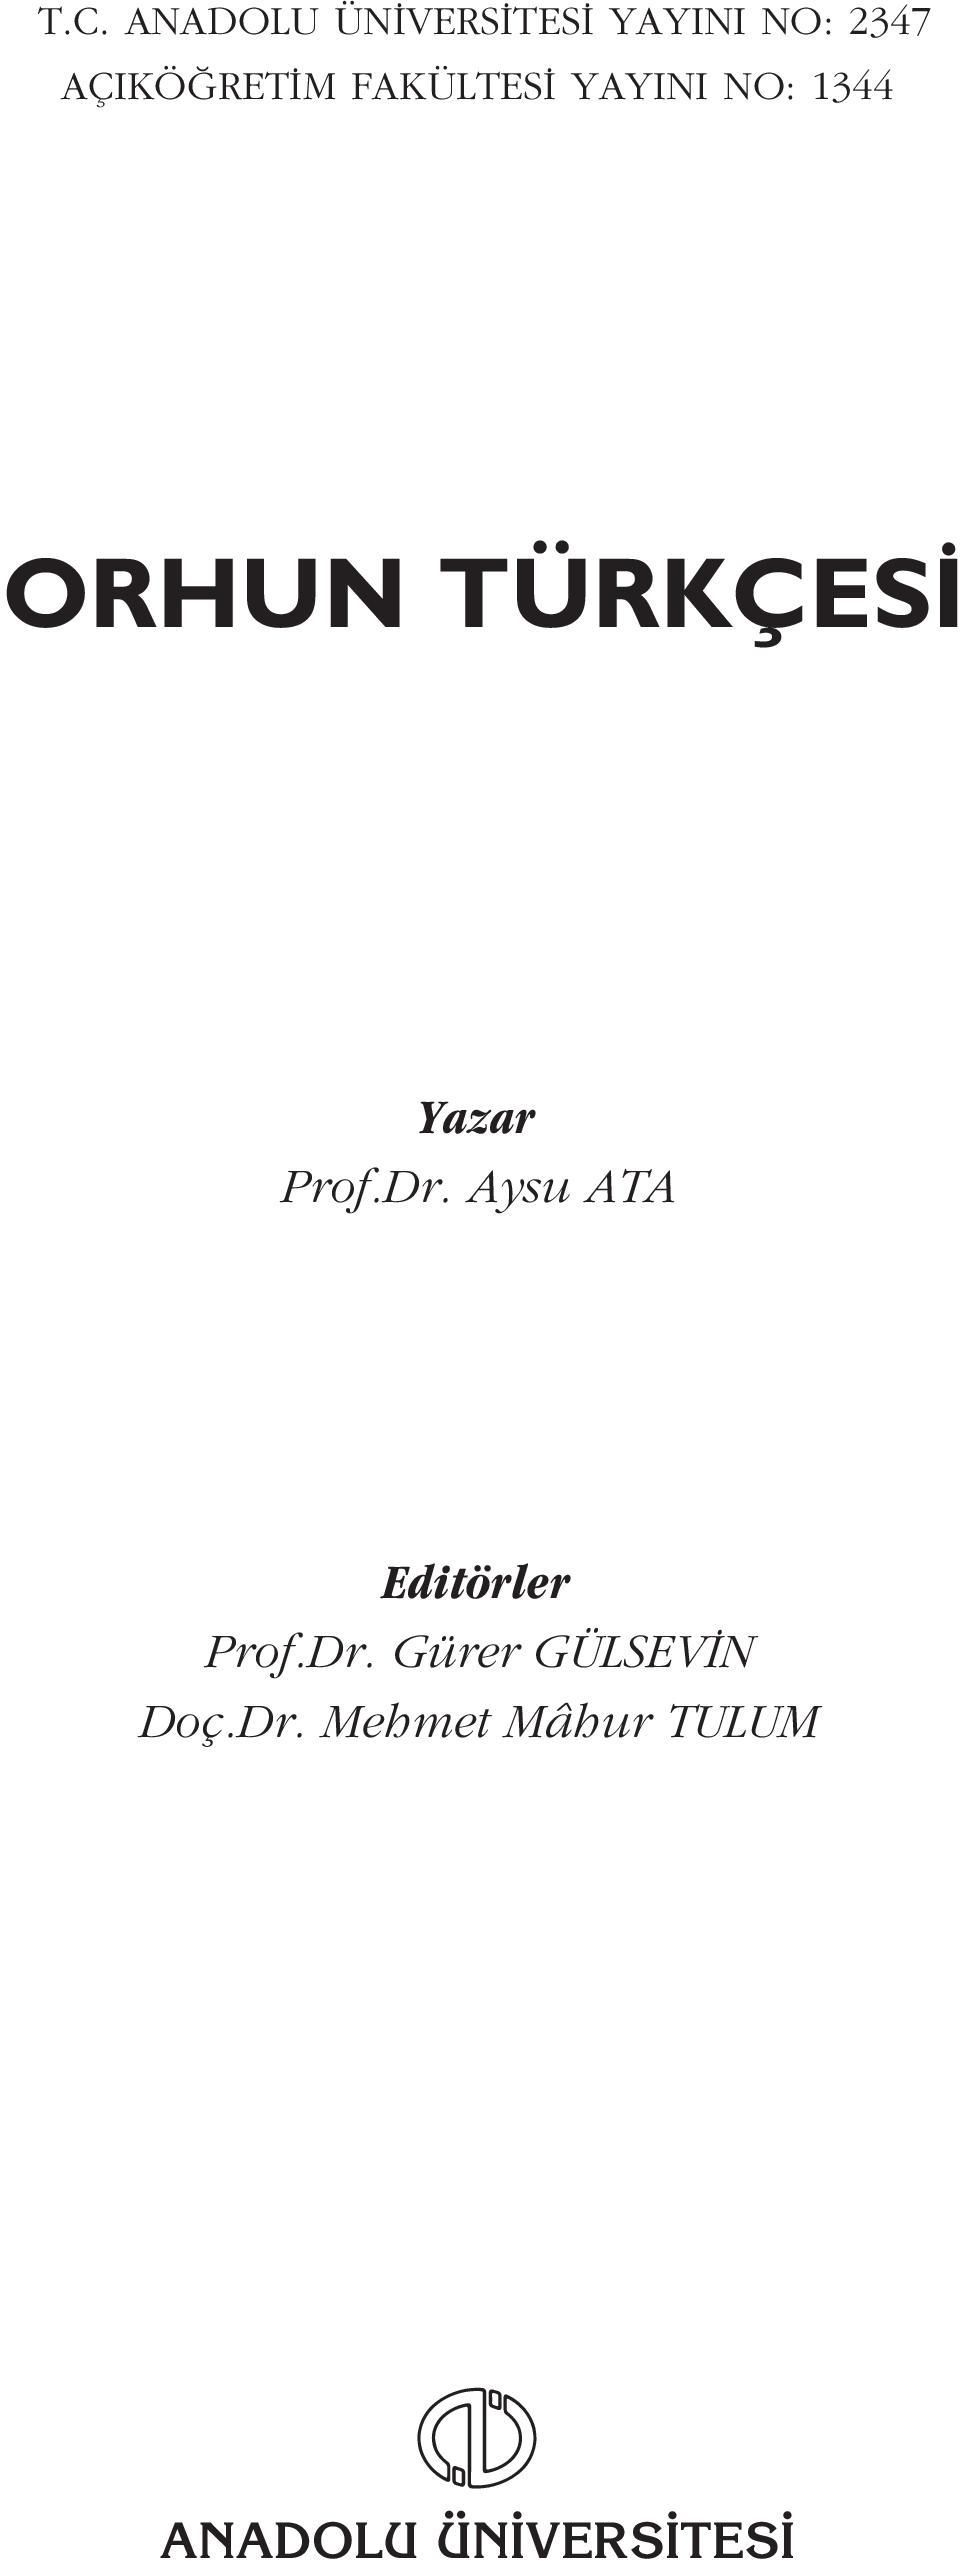 Yazar Prof.Dr. Aysu ATA Editörler Prof.Dr. Gürer GÜLSEV N Doç.